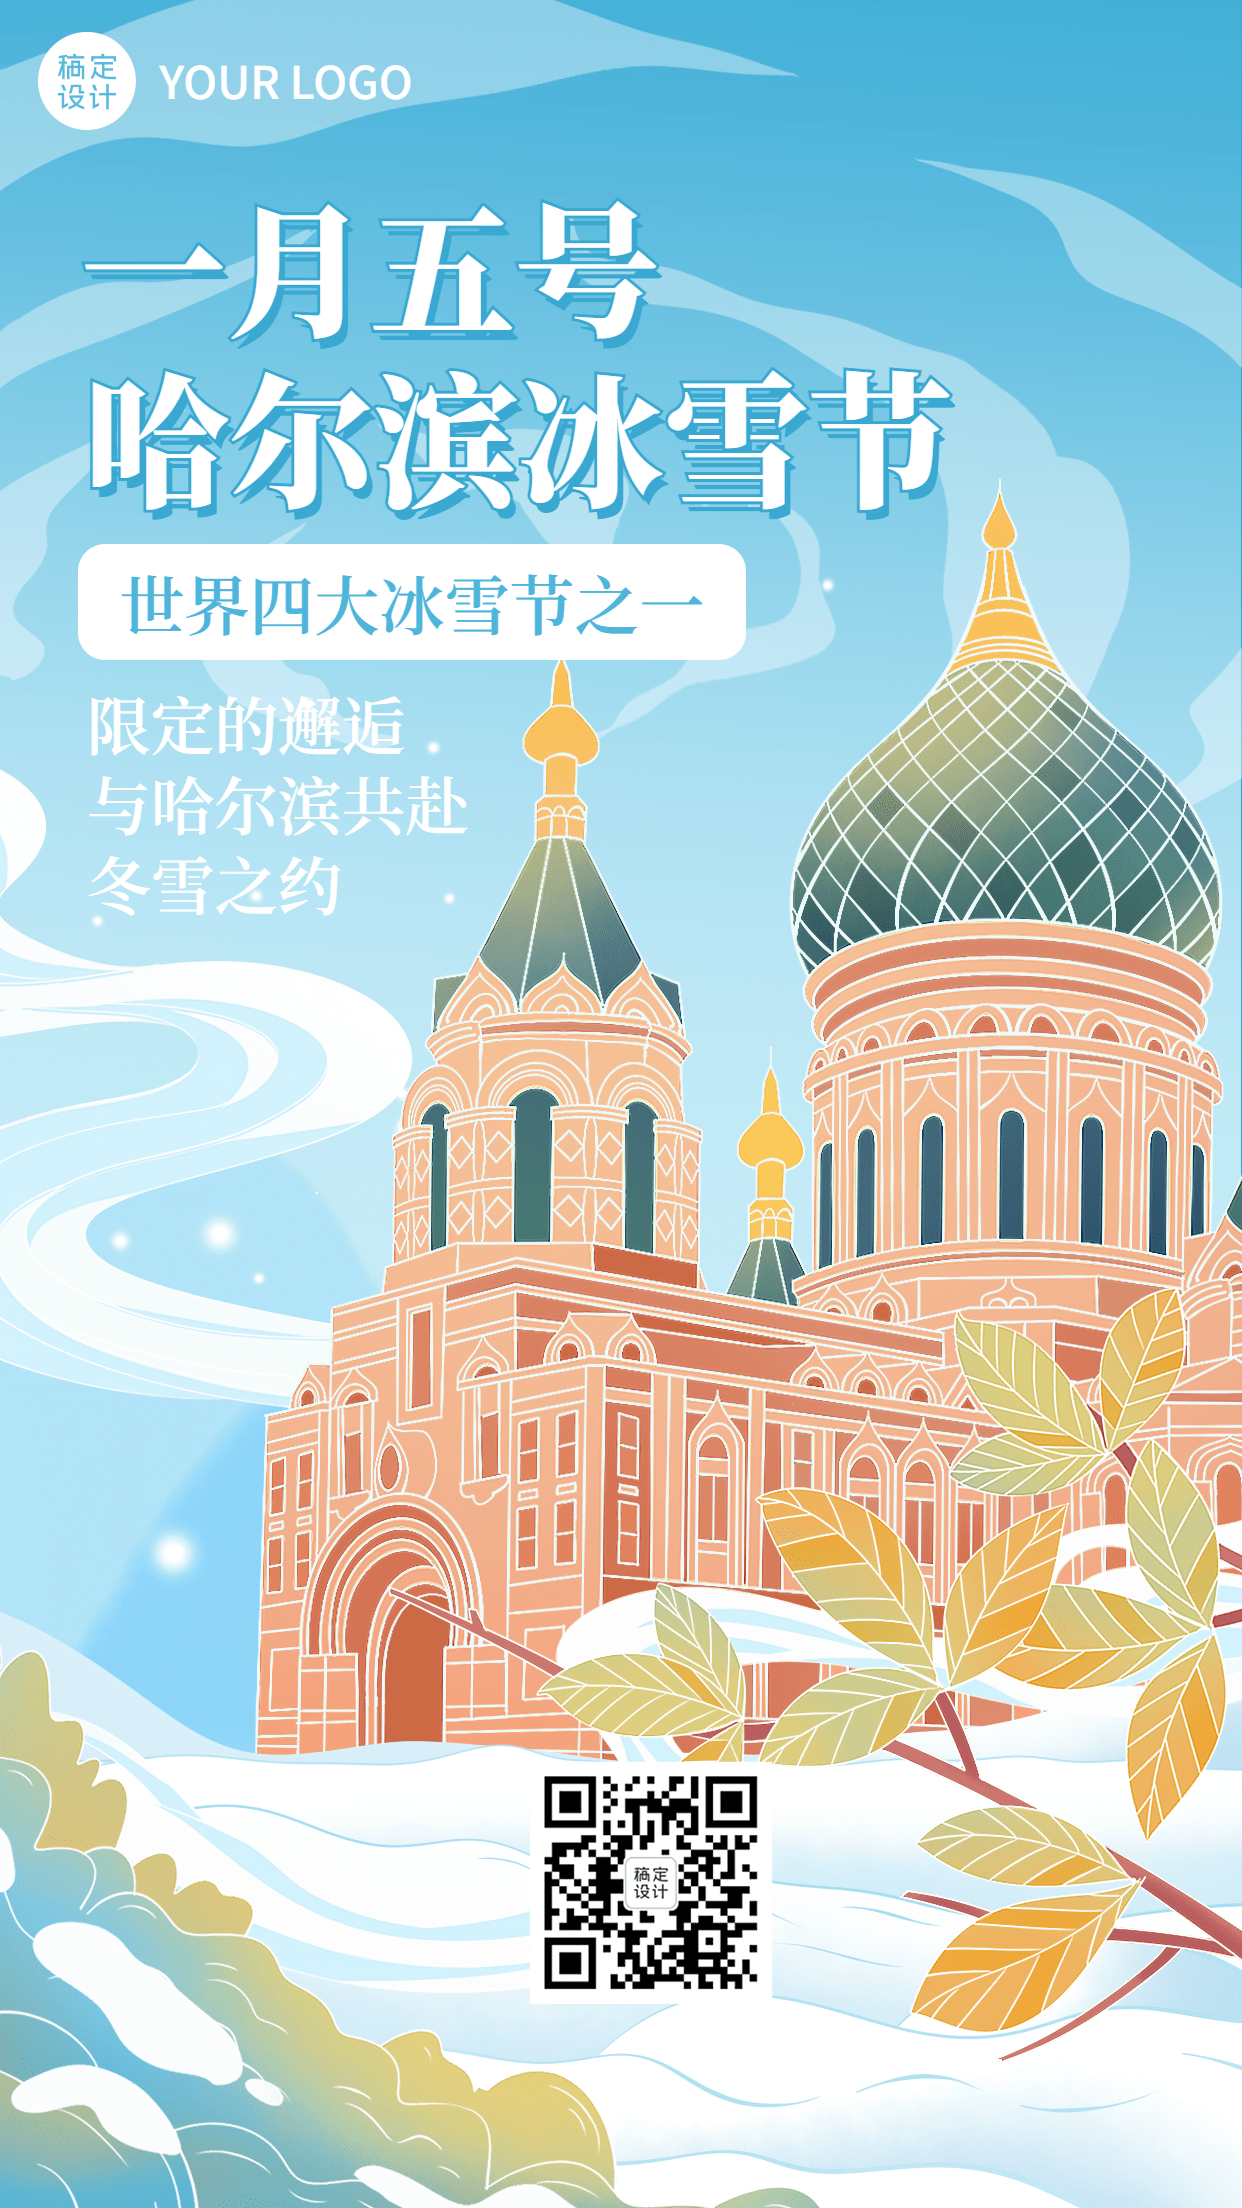 冬季冰雪旅游哈尔滨国际冰雪节活动宣传手绘海报